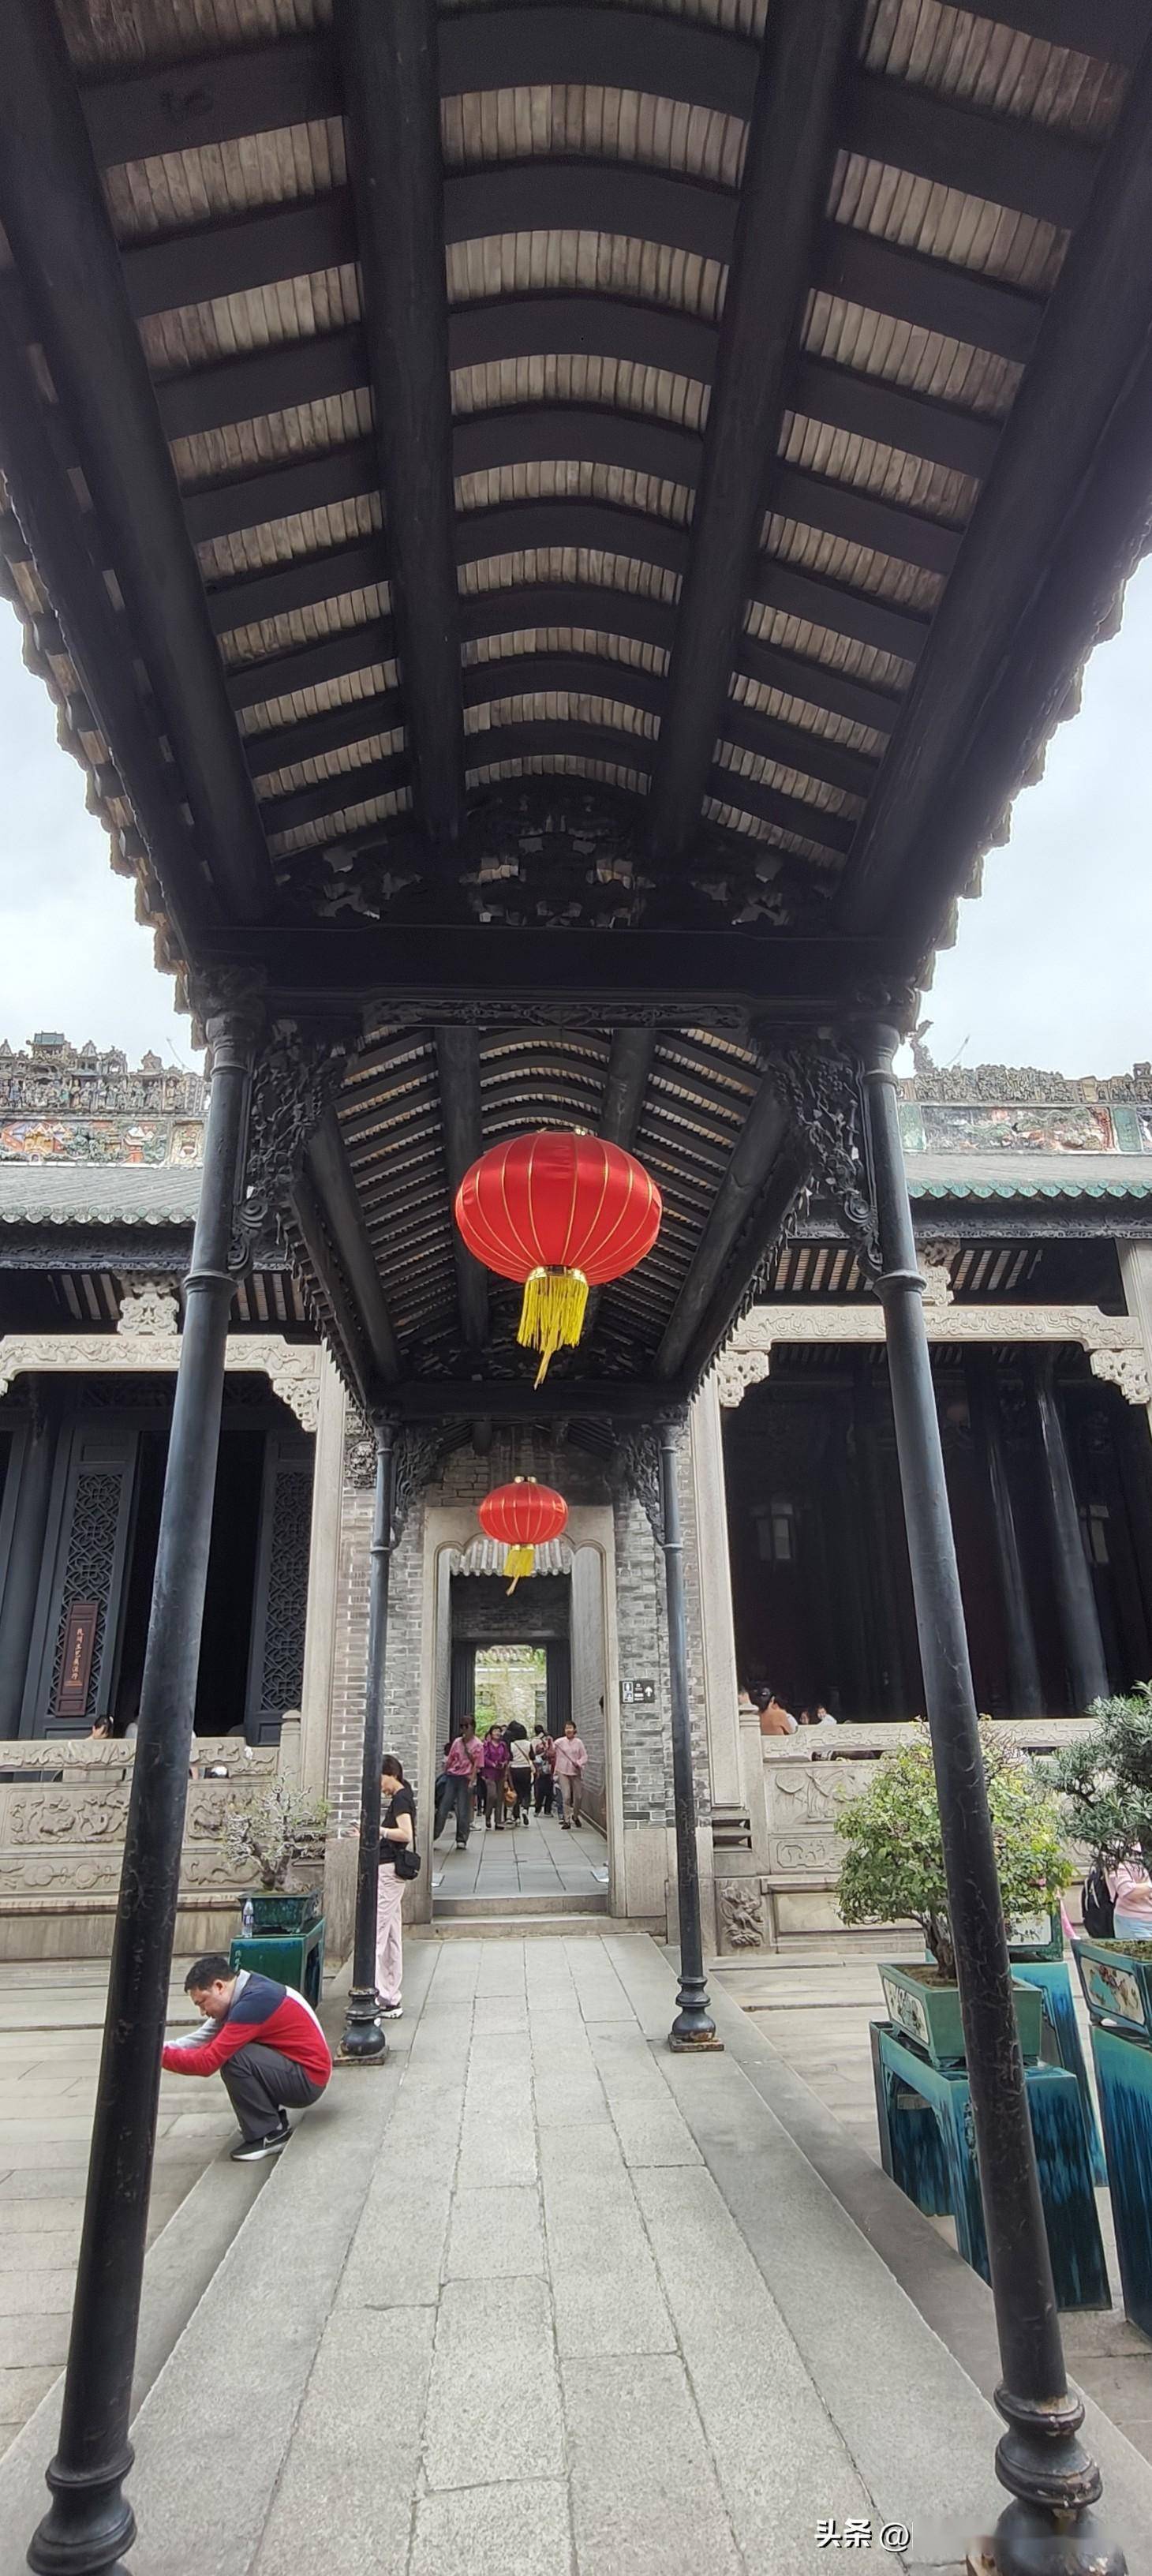 陈家祠堂不仅是广州市著名的文化旅游景点,也是全国重点文物保护单位